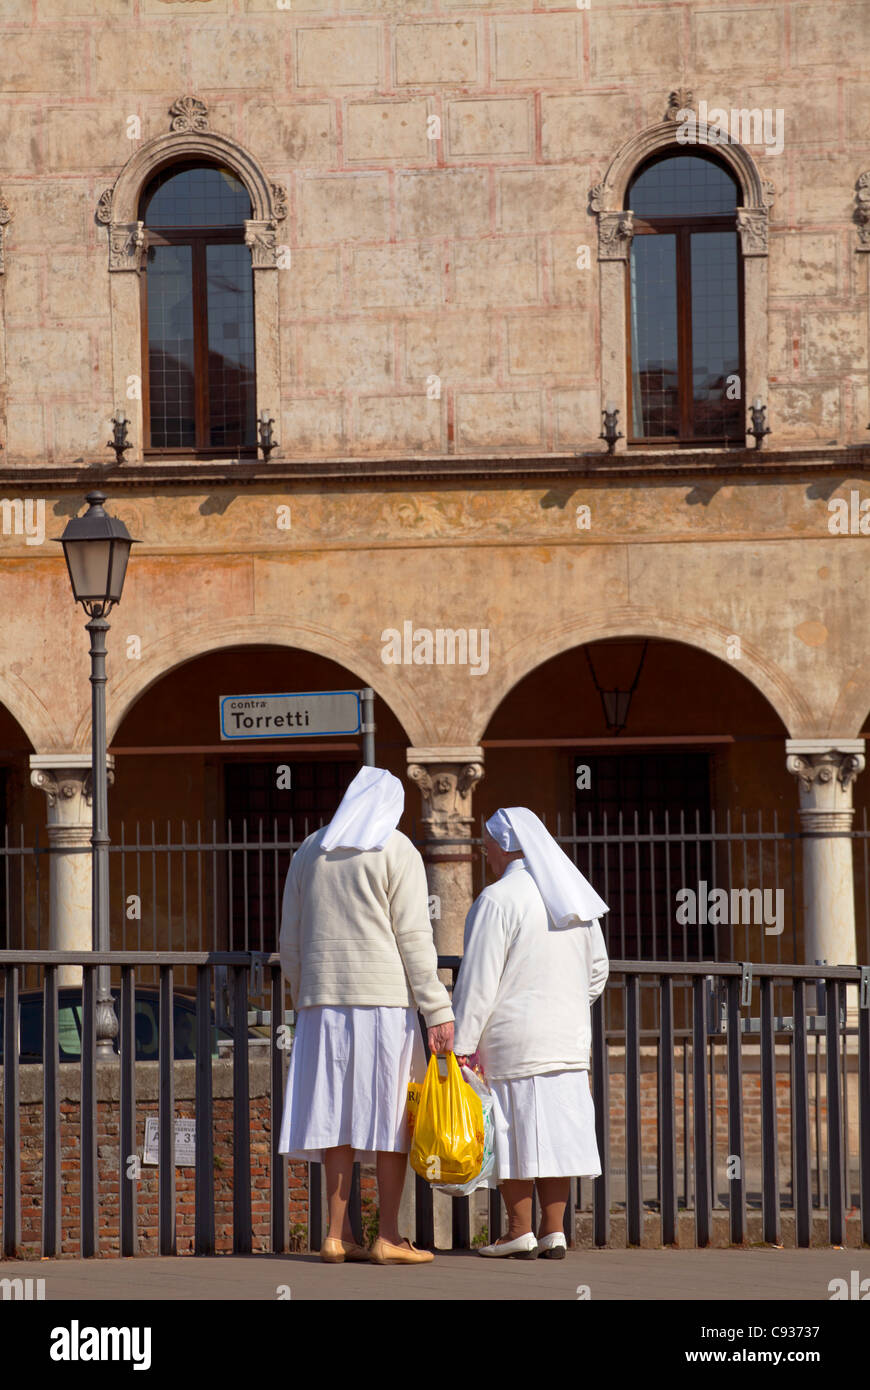 Italien, Veneto, Vicenza, zwei Nonnen aus einem katholischen Orden stehen auf einer Brücke Stockfoto